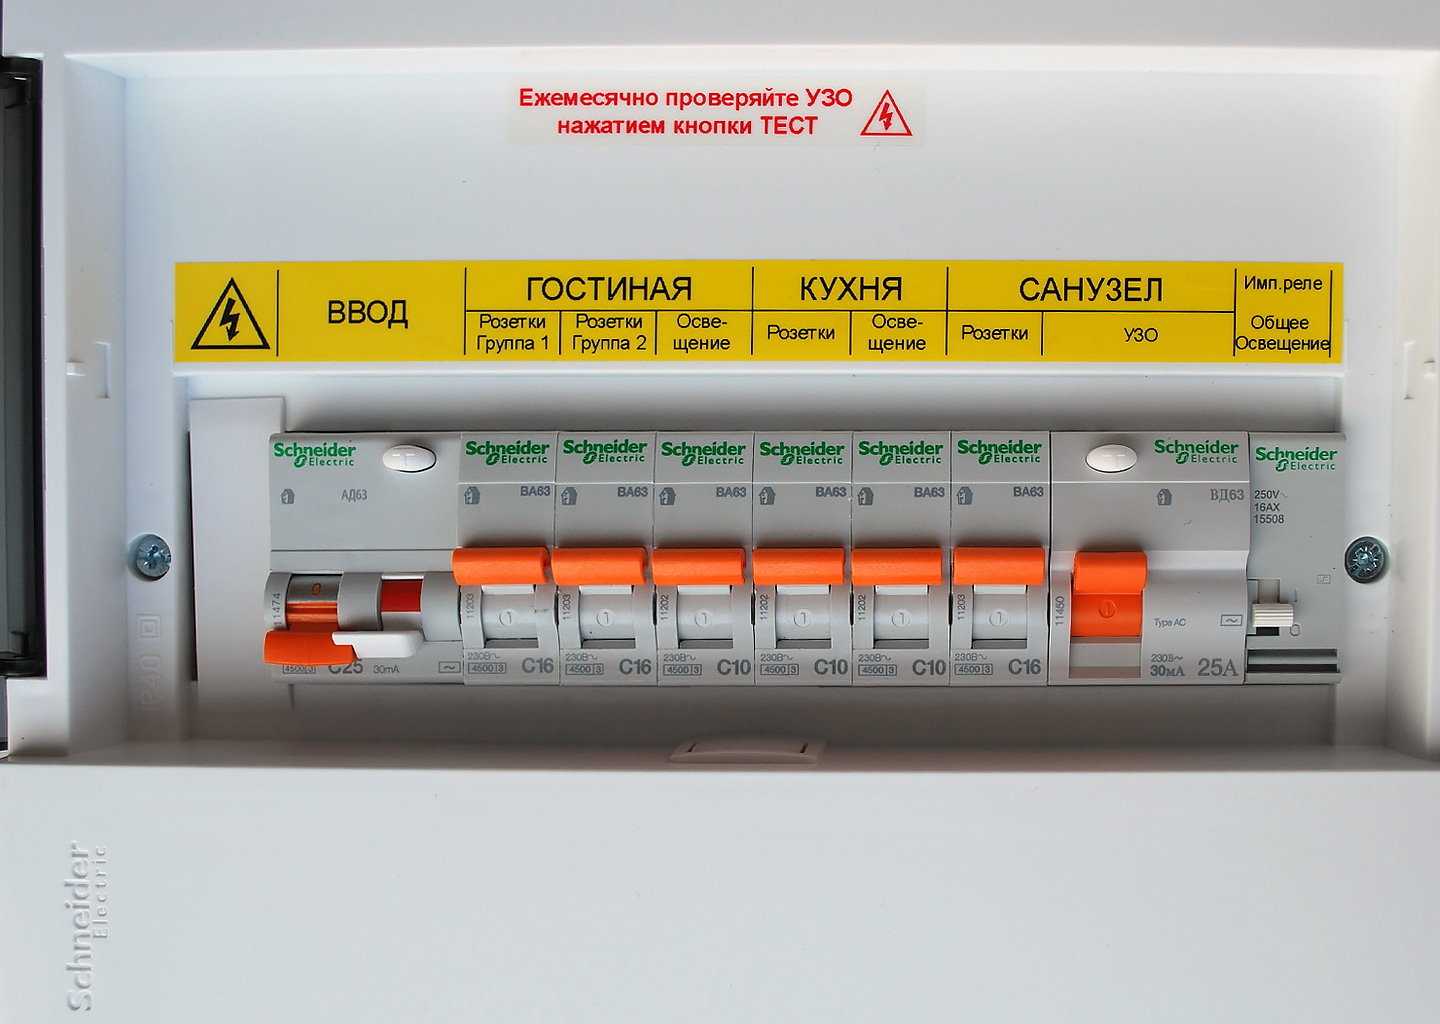 Принтер для маркировки PT-E550WVP с расширенным набором функций для электриков | Brother 11